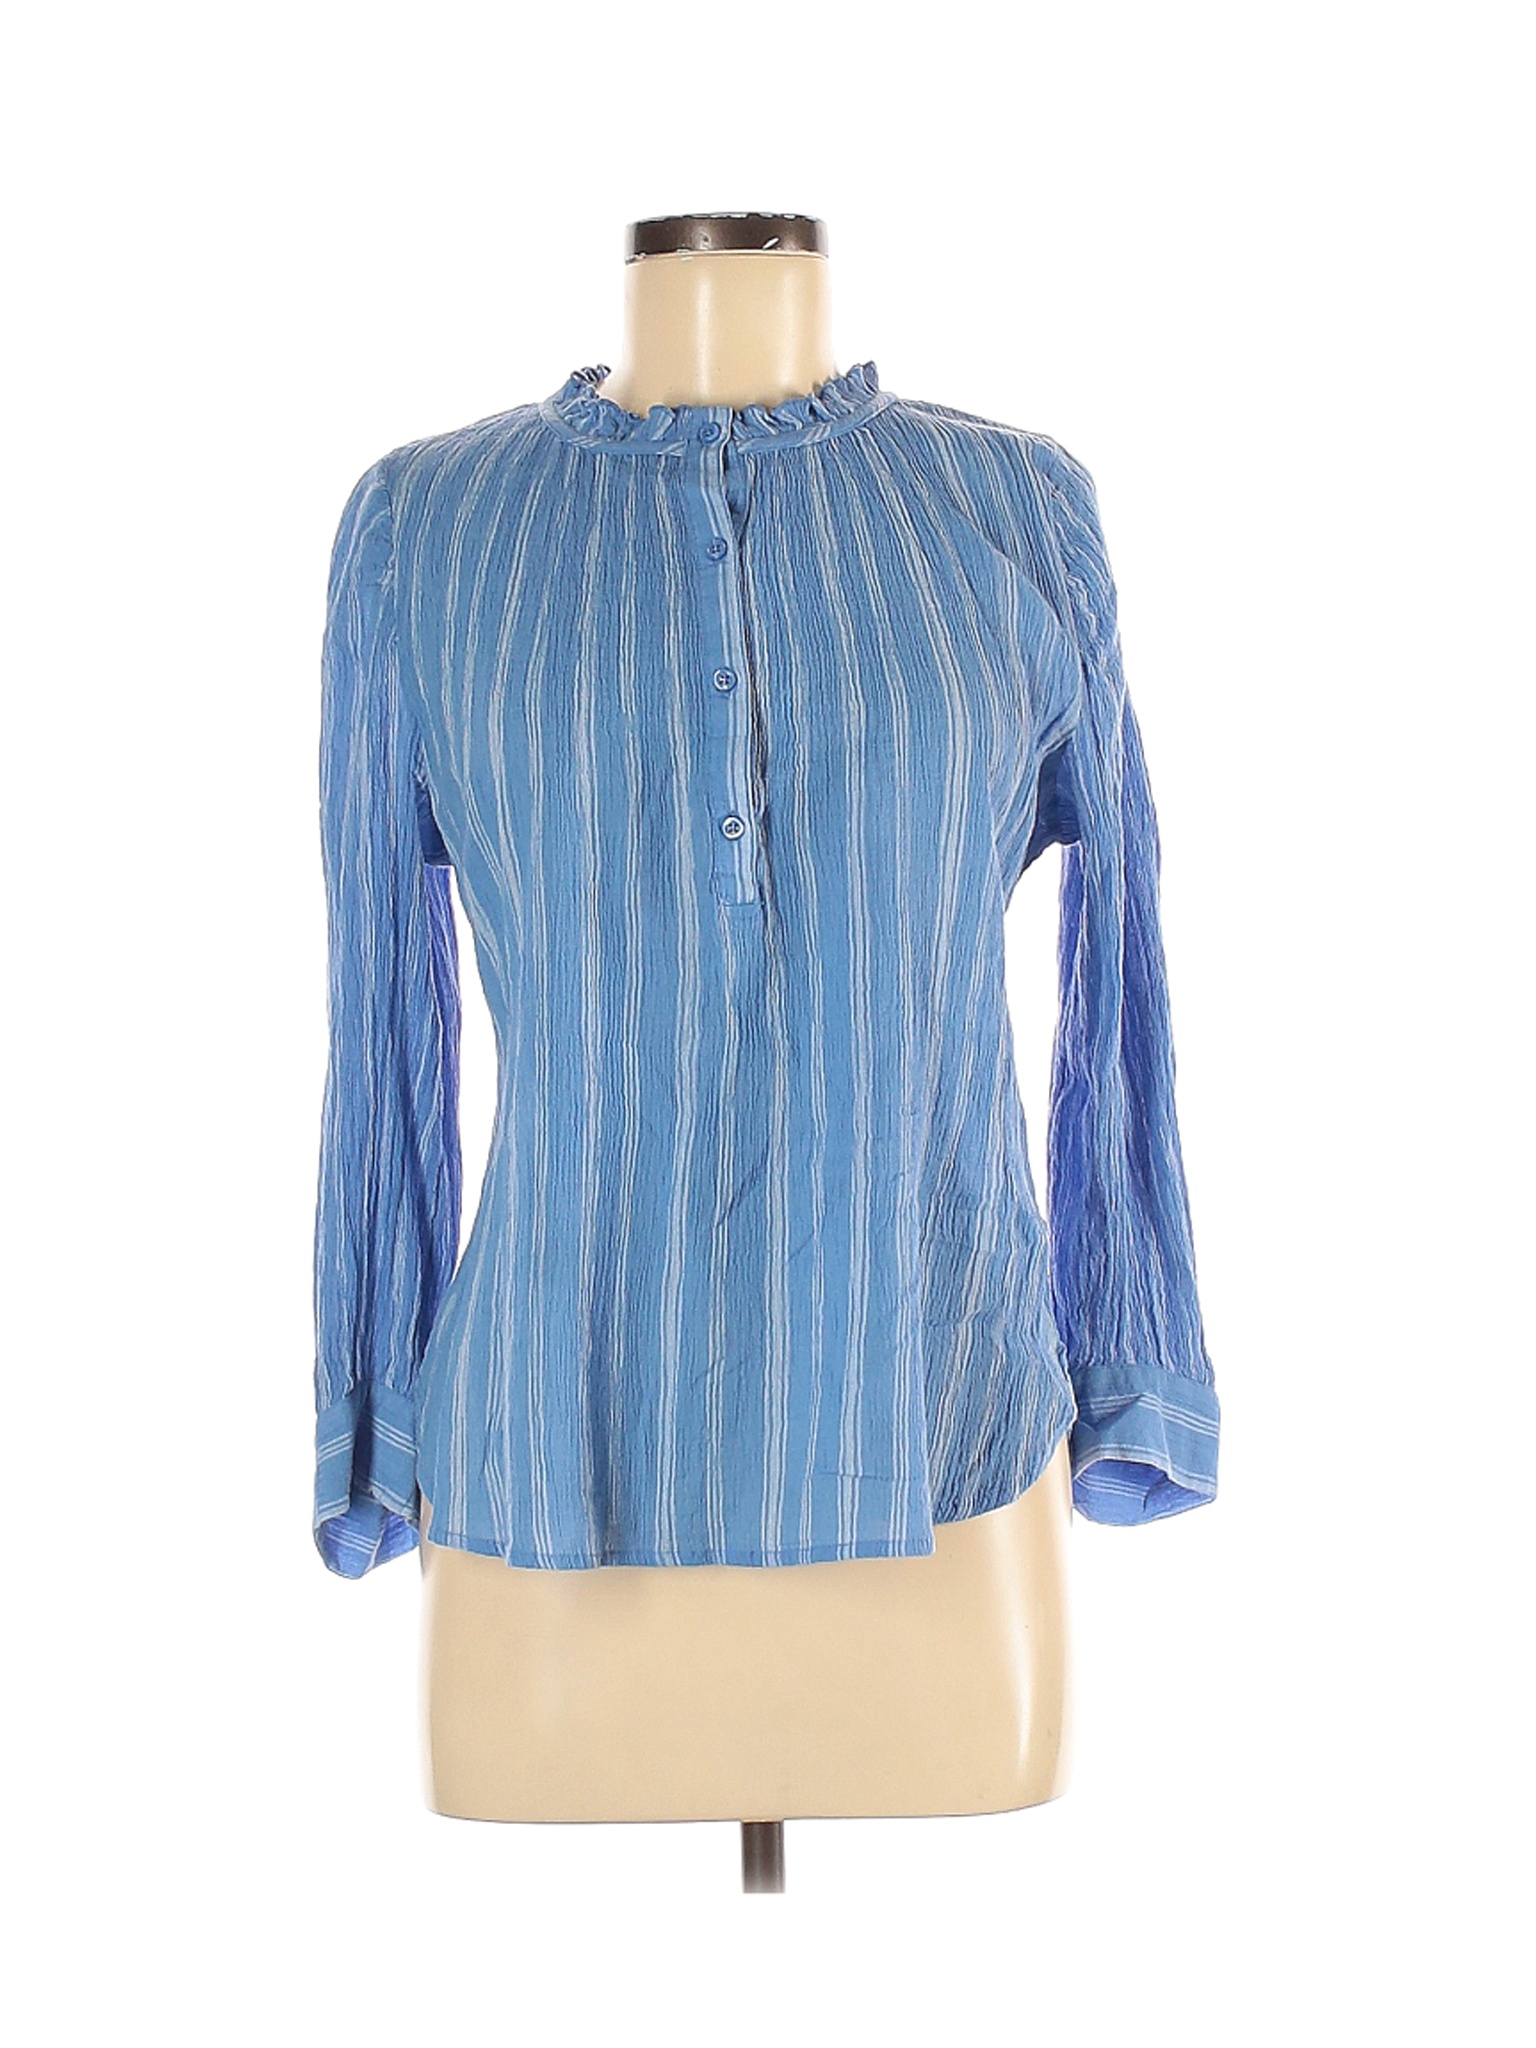 Gap Women Blue Long Sleeve Blouse M | eBay